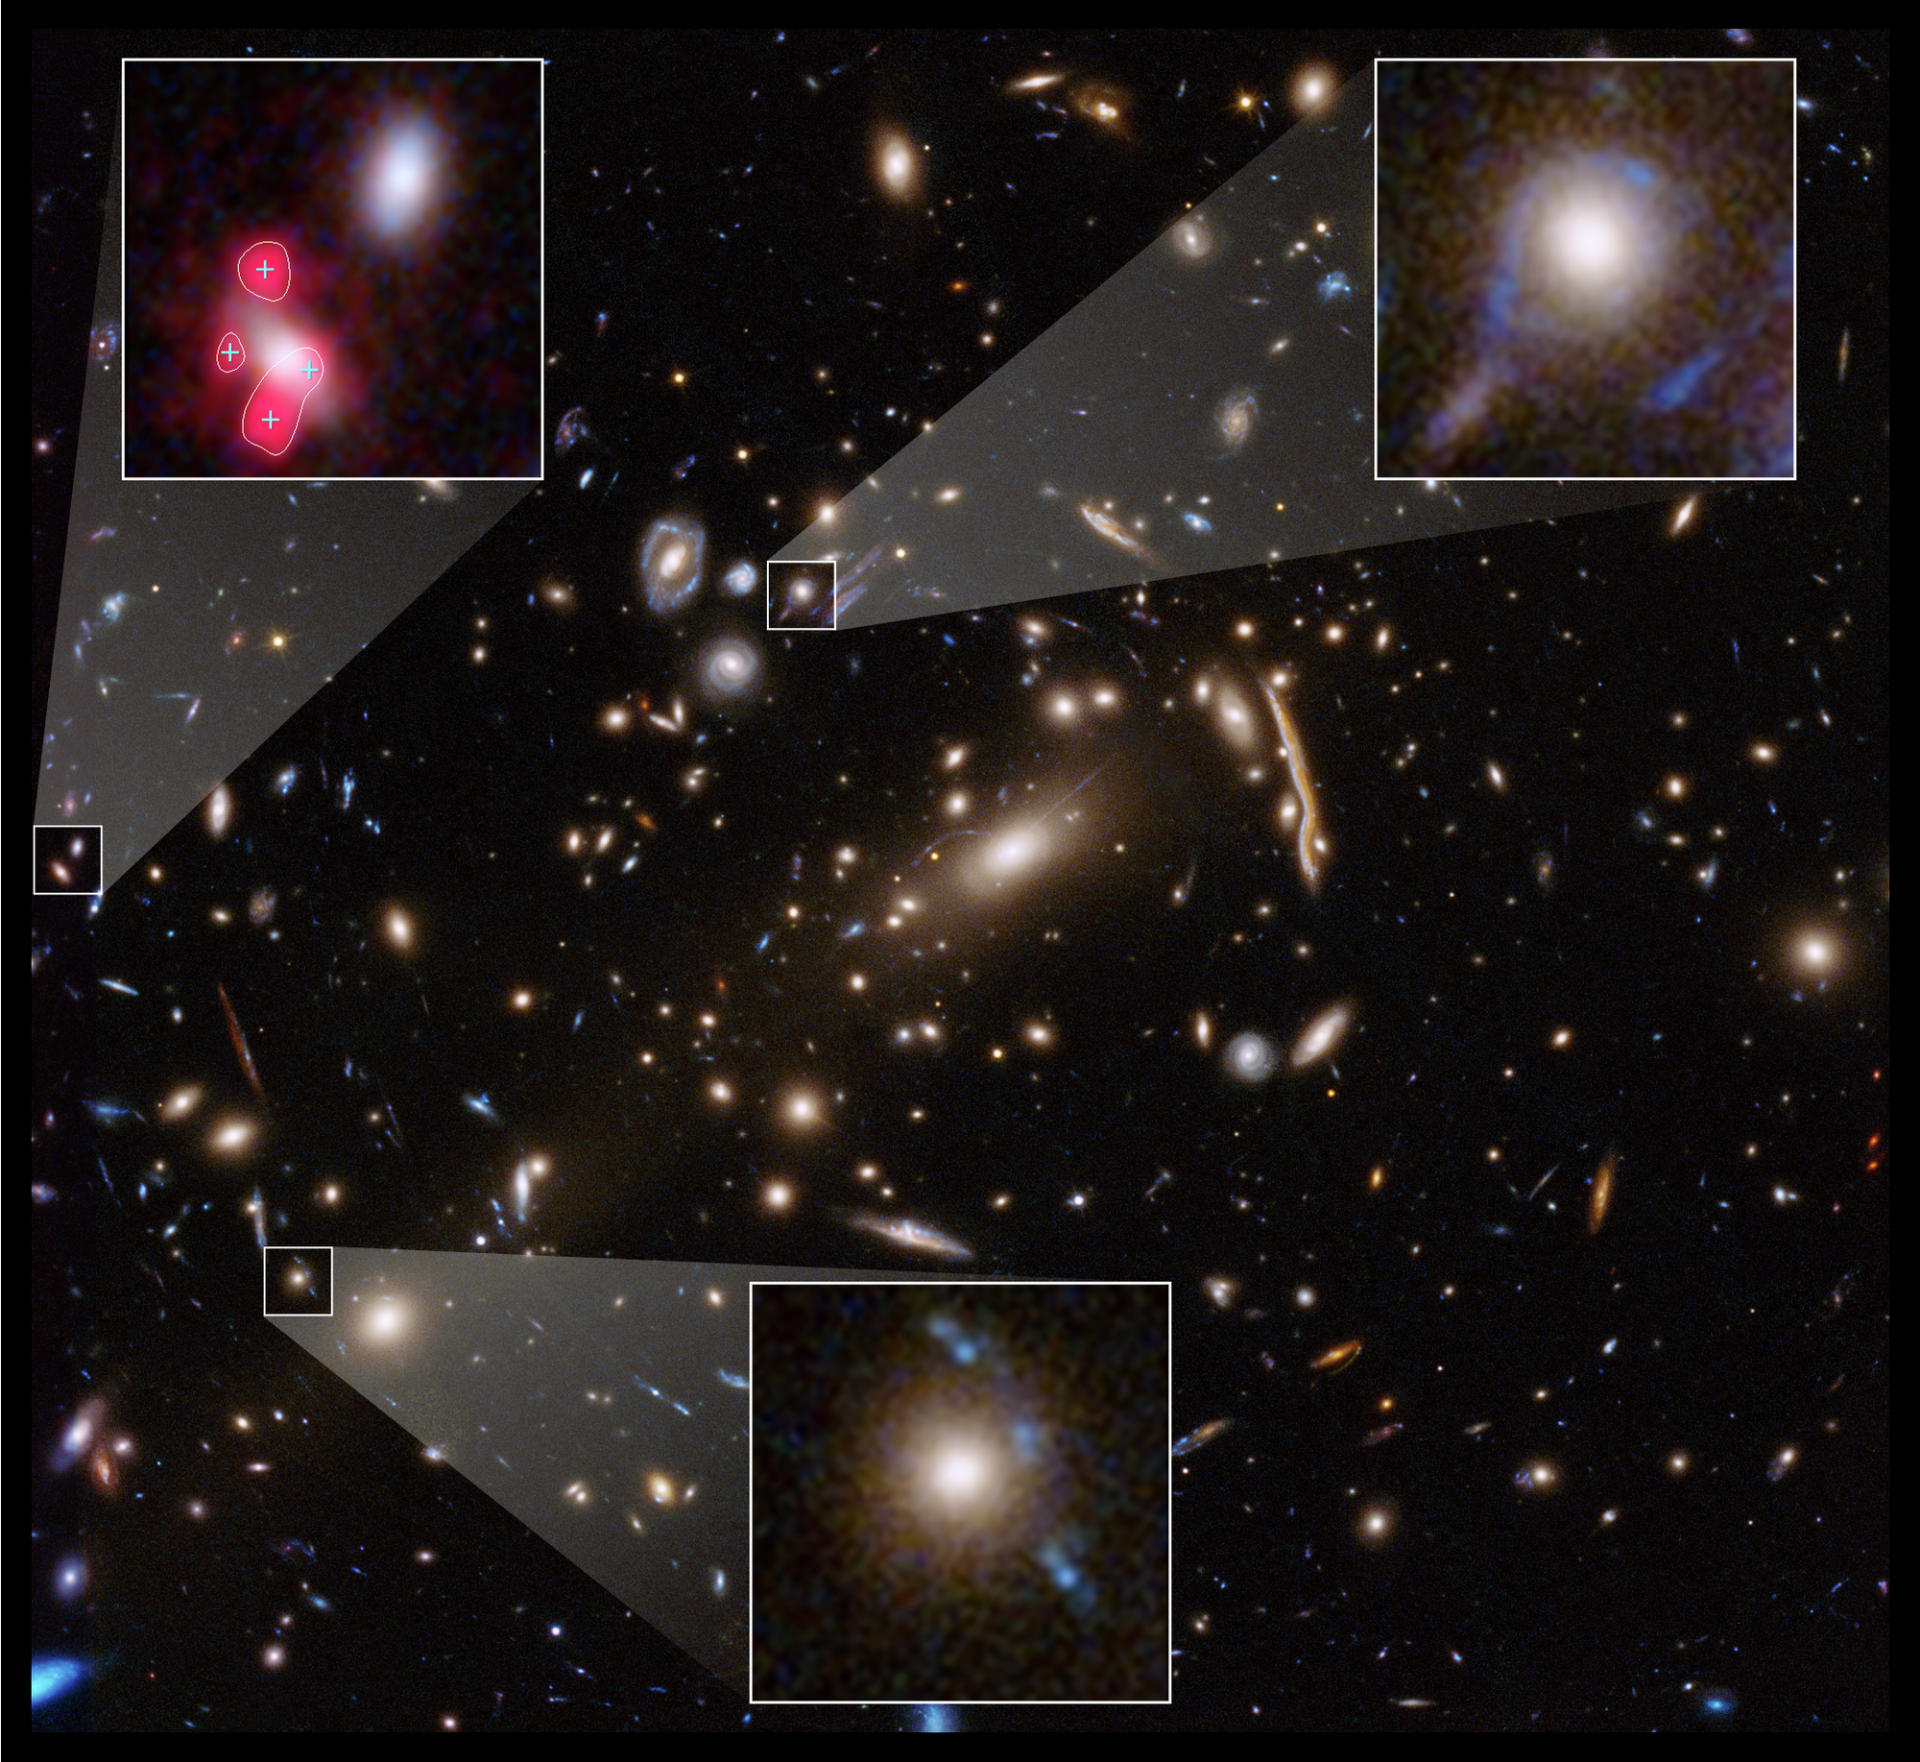 Hubble telescope observations highlight darkish matter’s weirdness